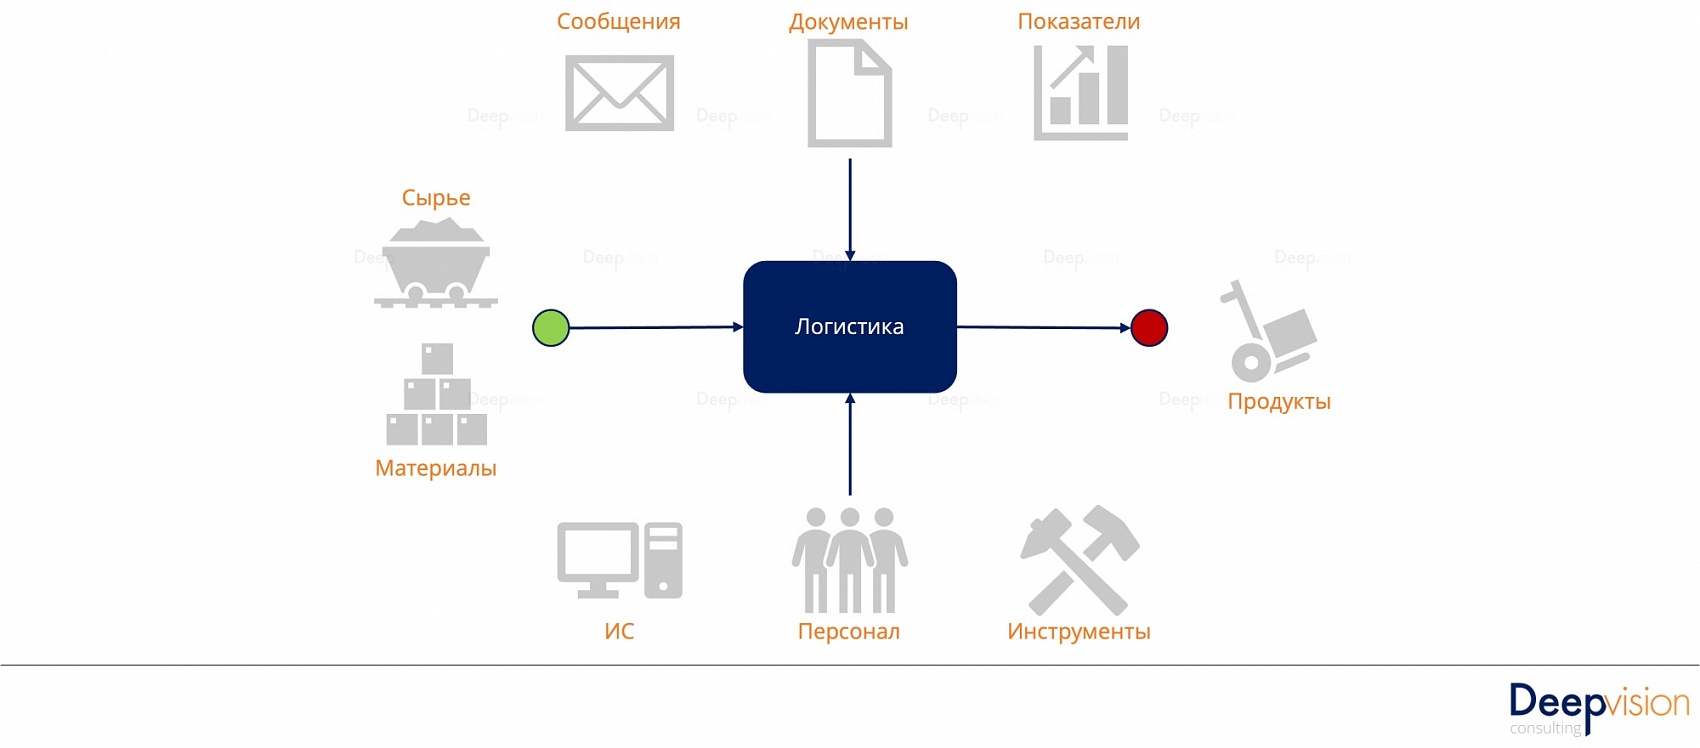 Основы бизнес-процессов - тезисы вебинара Составляющие процессов.jpg